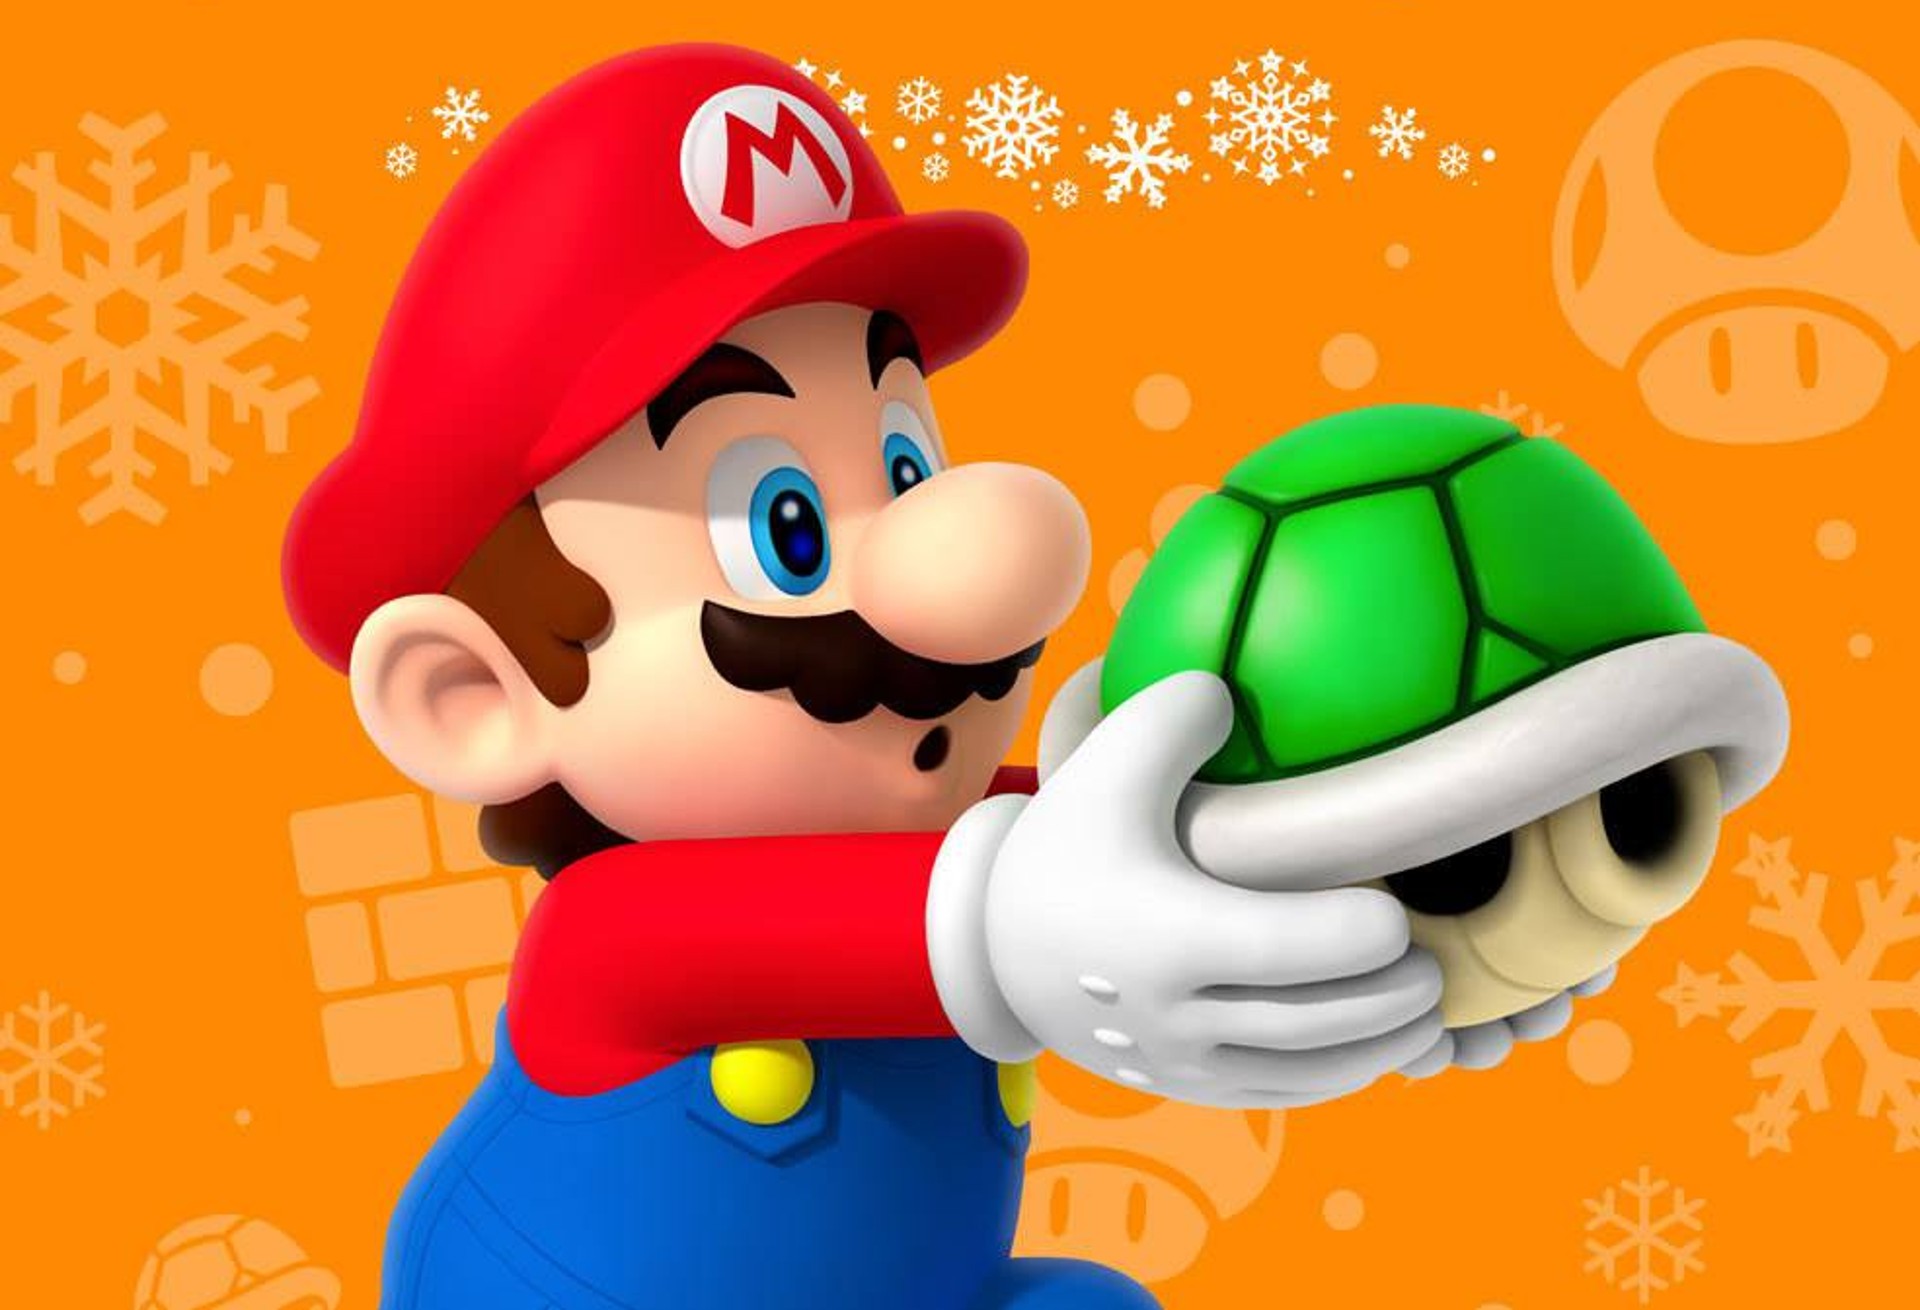 ประธาน Nintendo เผย ยากทีจะทำเกมรีเมกหรือภาคต่อได้ทุกเกมของ Nintendo